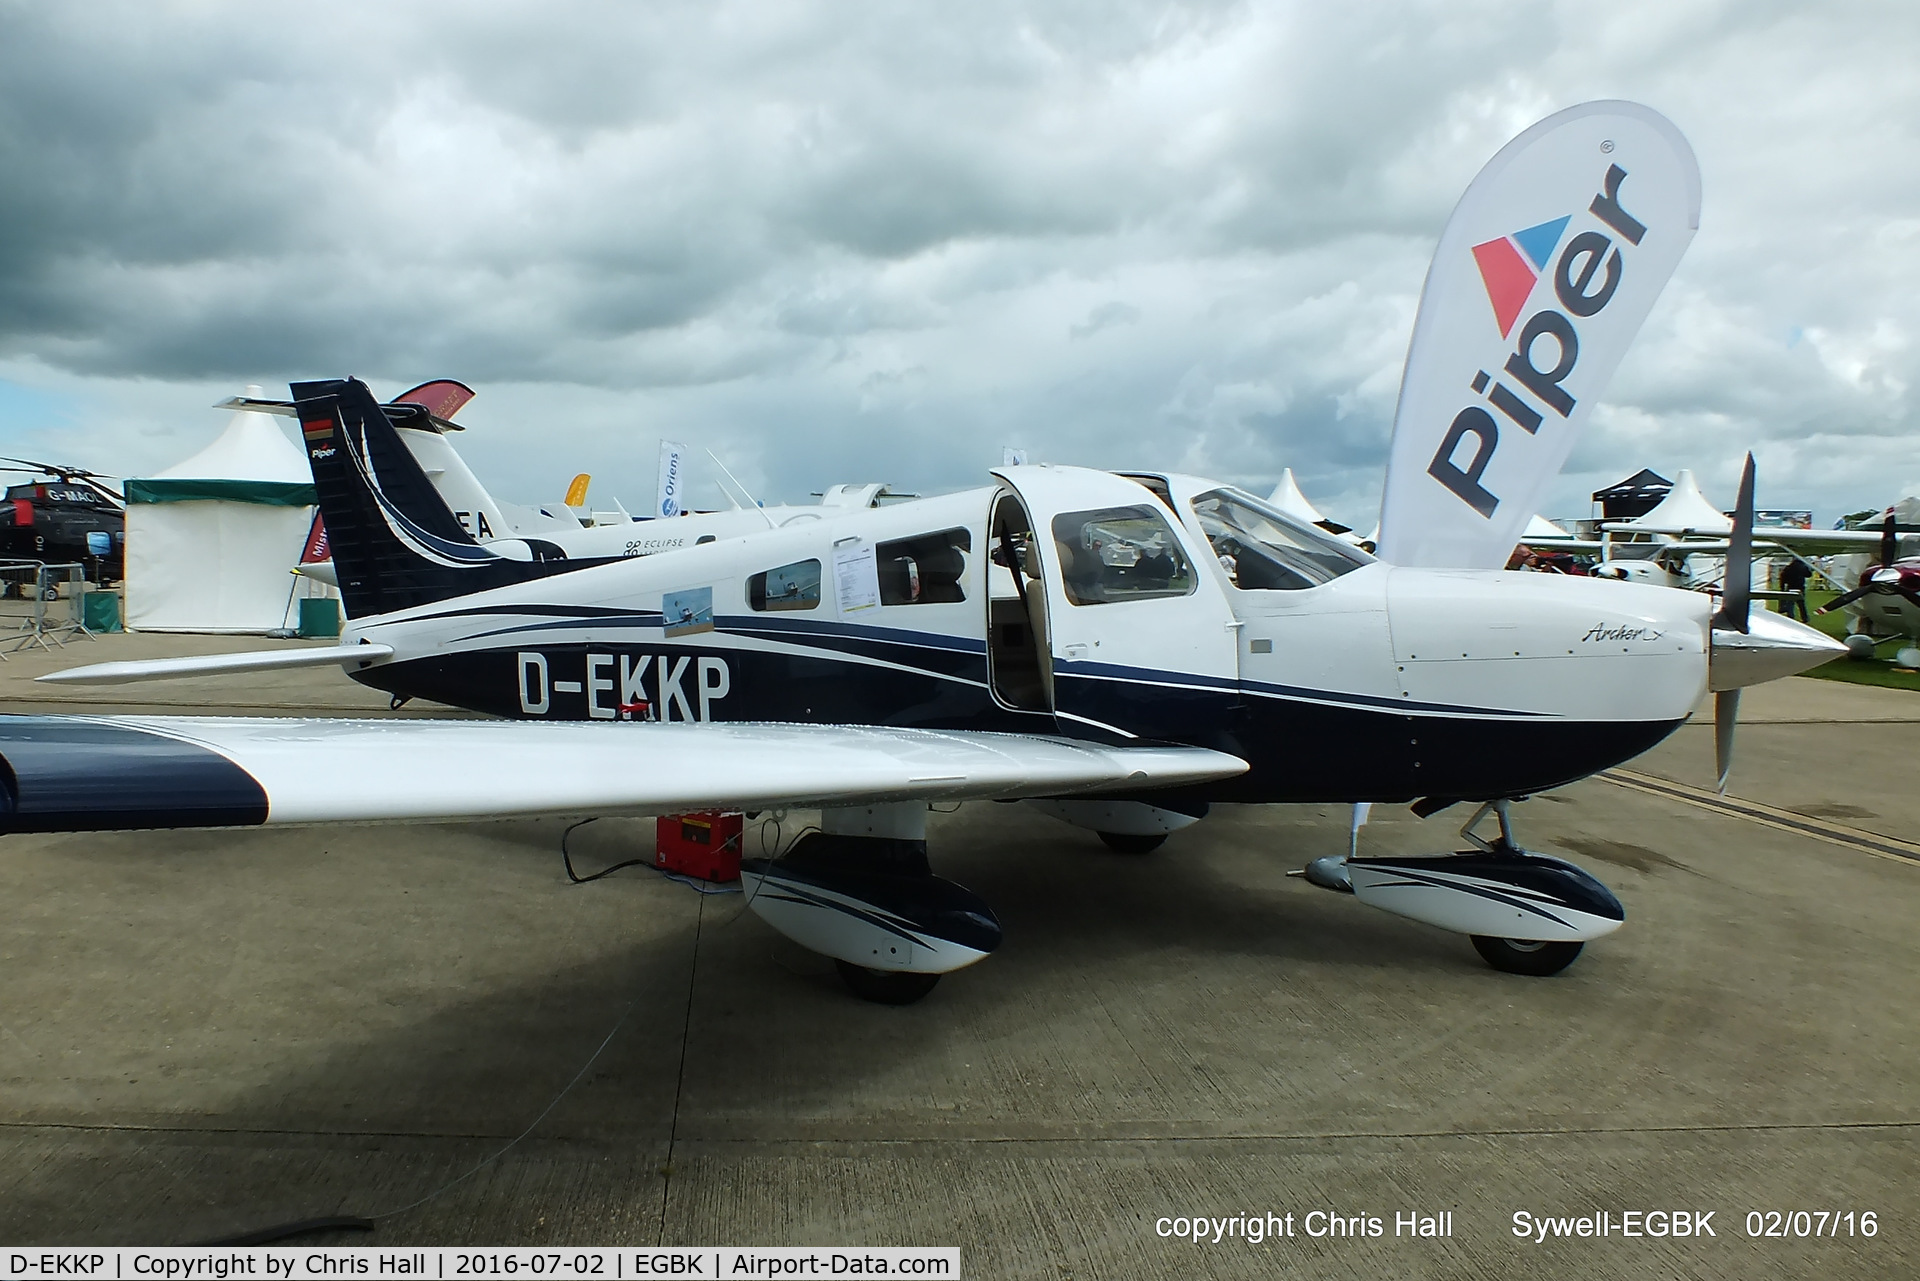 D-EKKP, 2015 Piper PA-28-181 Archer III LX C/N 28-43816, at Aeroexpo 2016